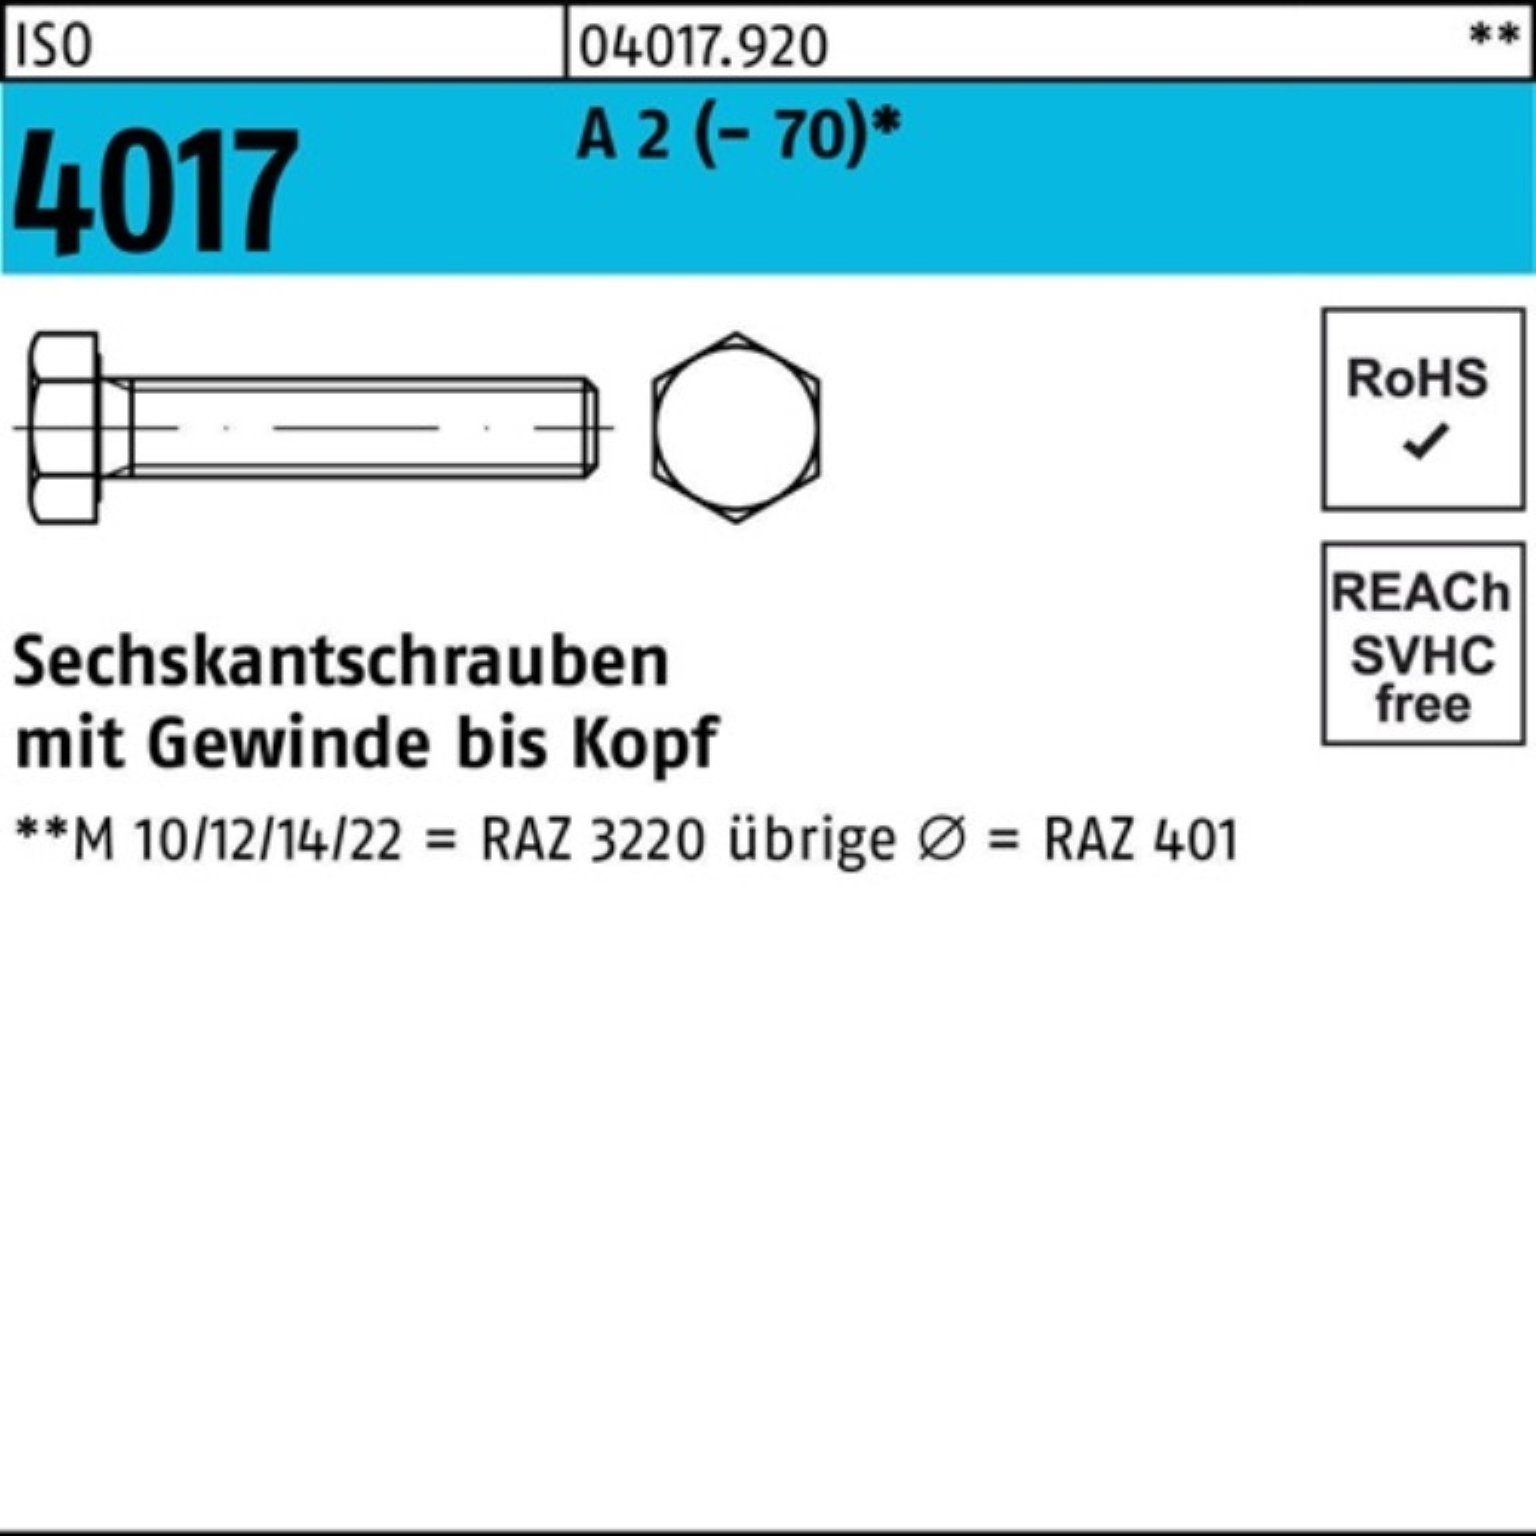 Bufab Sechskantschraube 100er Pack Sechskantschraube ISO 4017 VG M10x 90 A 2 (70) 50 Stück